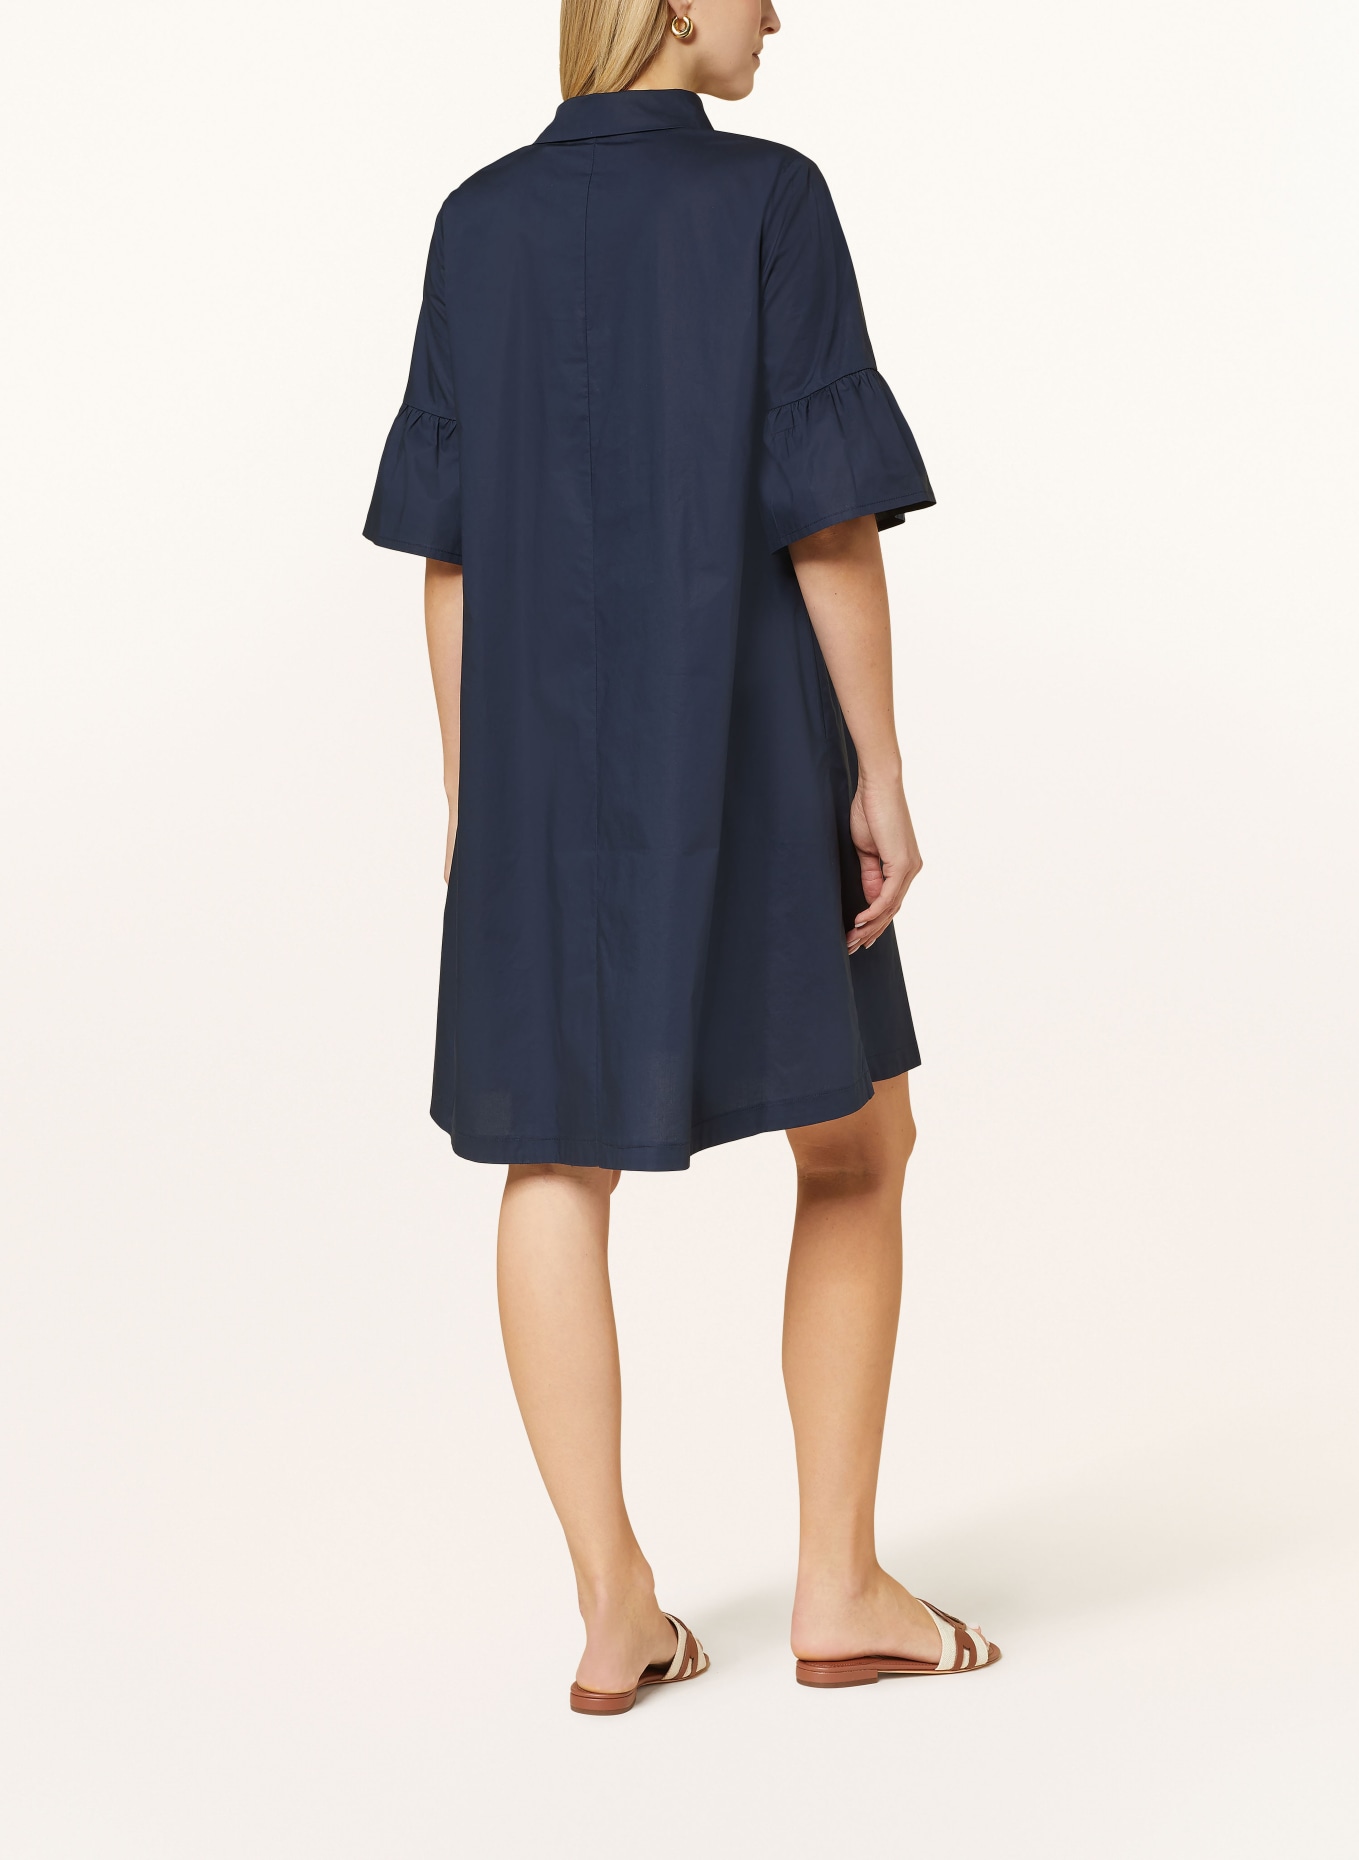 CATNOIR Kleid mit 3/4-Arm, Farbe: 69 NAVY (Bild 3)